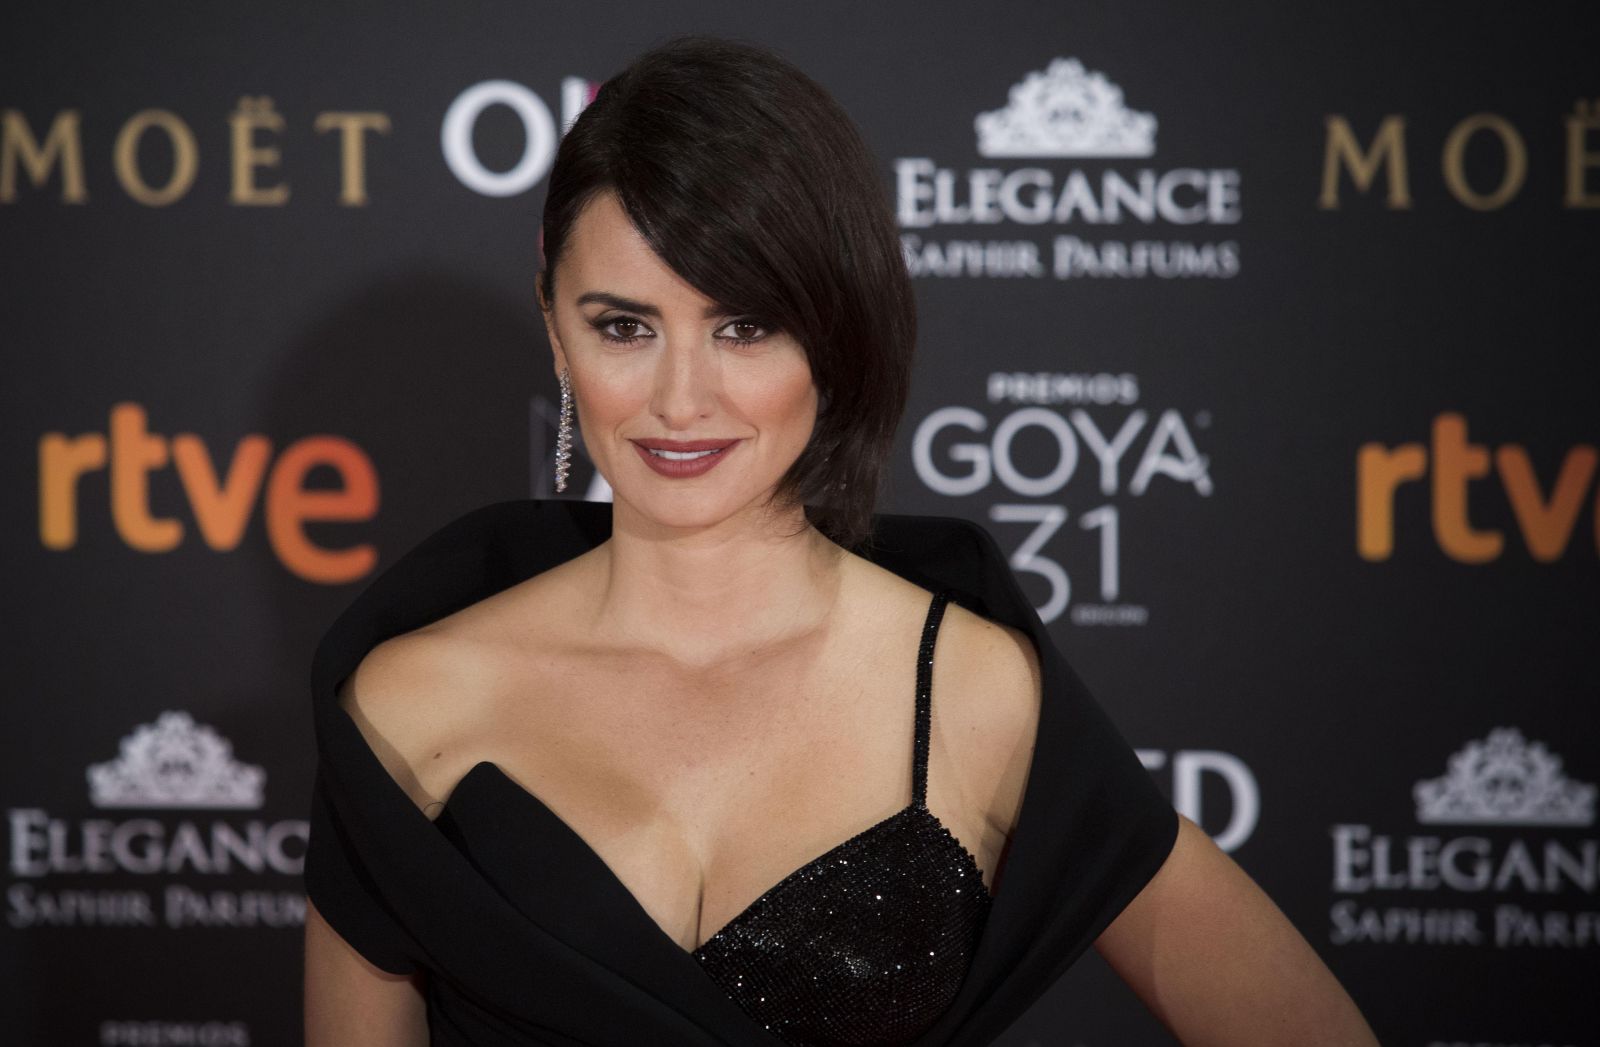 Образ дня: Пенелопа Крус в платье Atelier Versace на церемонии вручения премии Goya Cinema Awards (ФОТО)